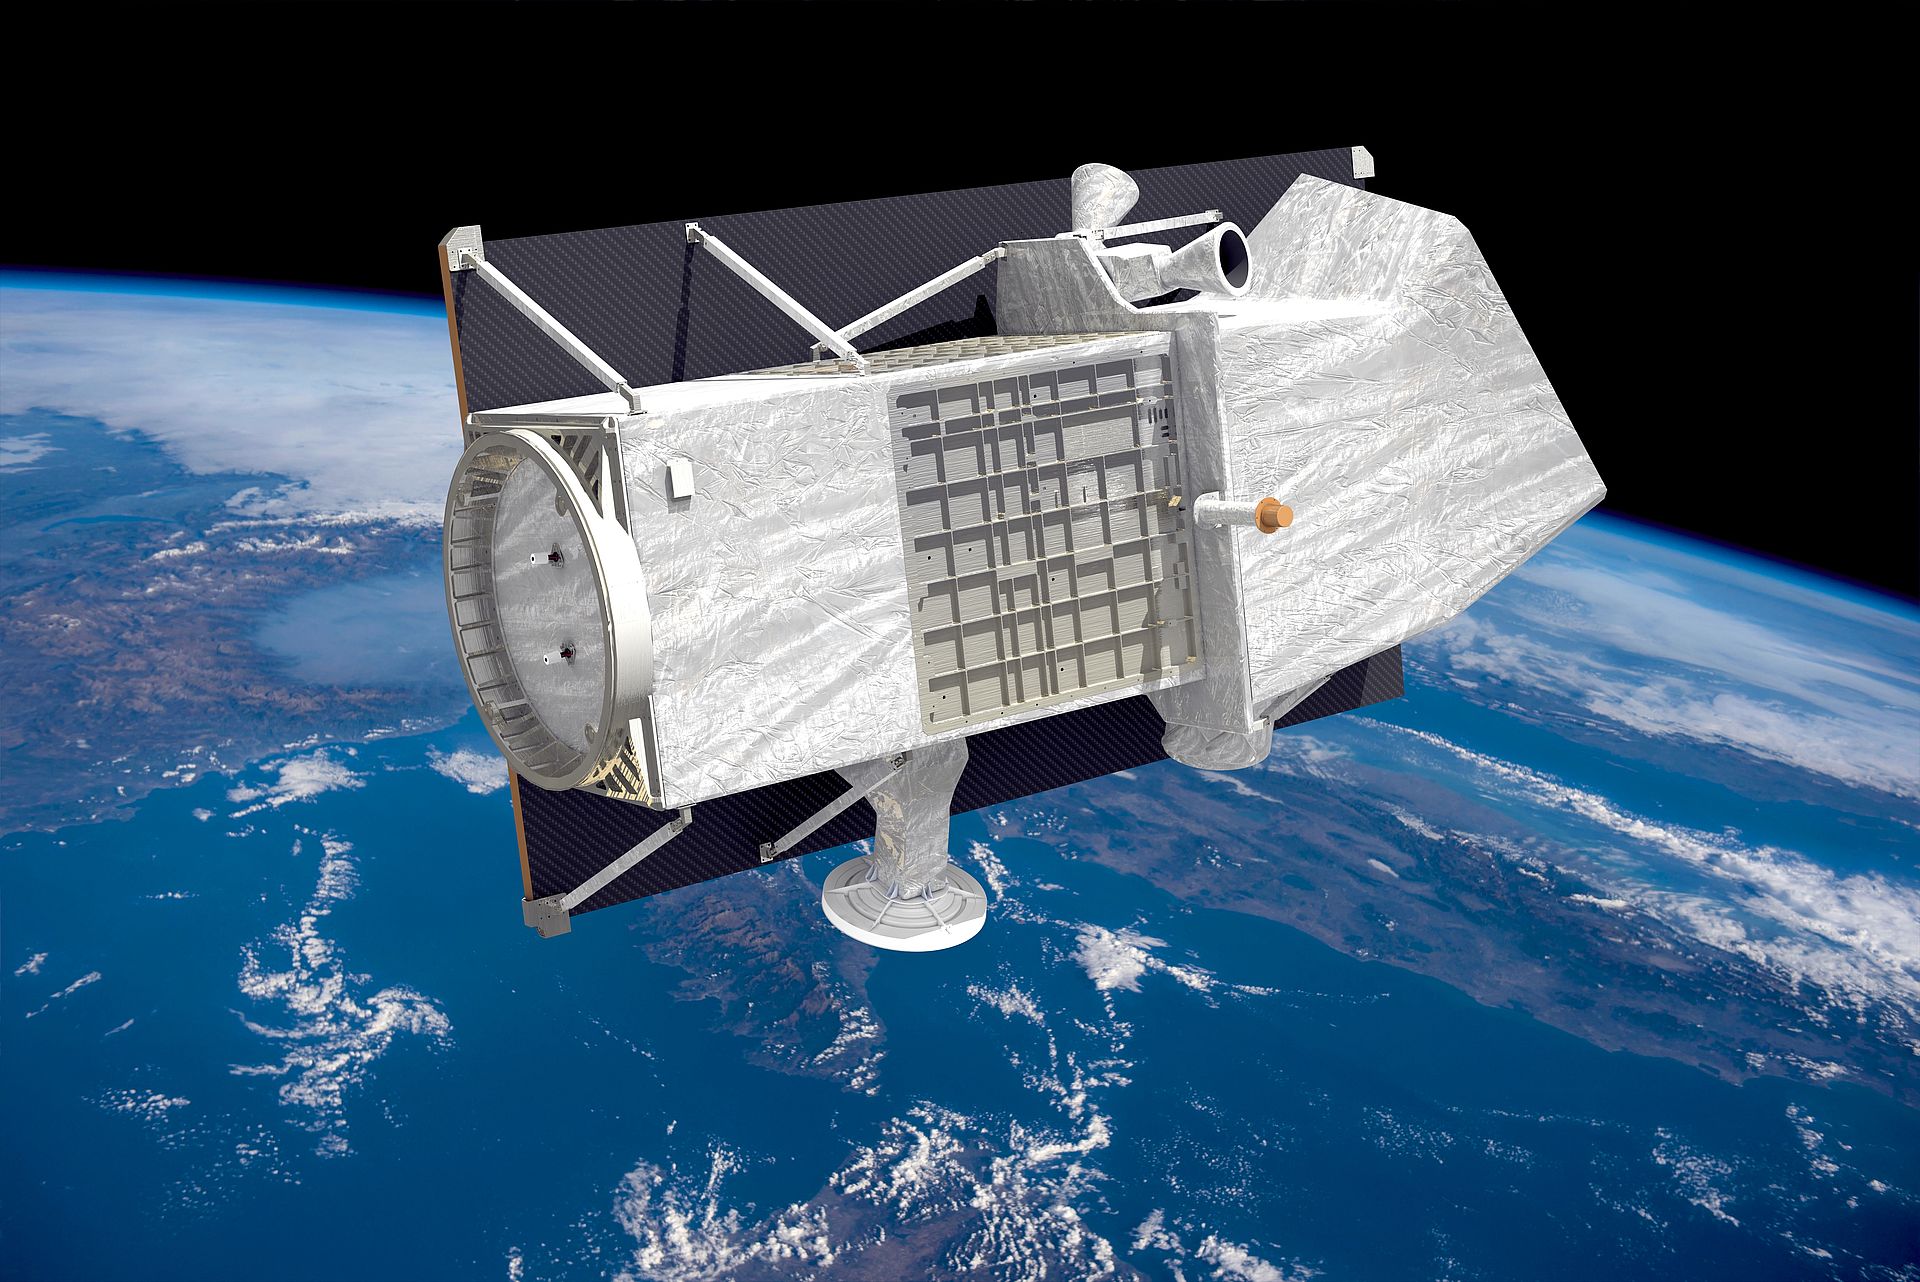 Warum fallen Satelliten eigentlich nicht vom Himmel? - Teil 1 von #TwoMinutesofSpace mit Carsten Borowy